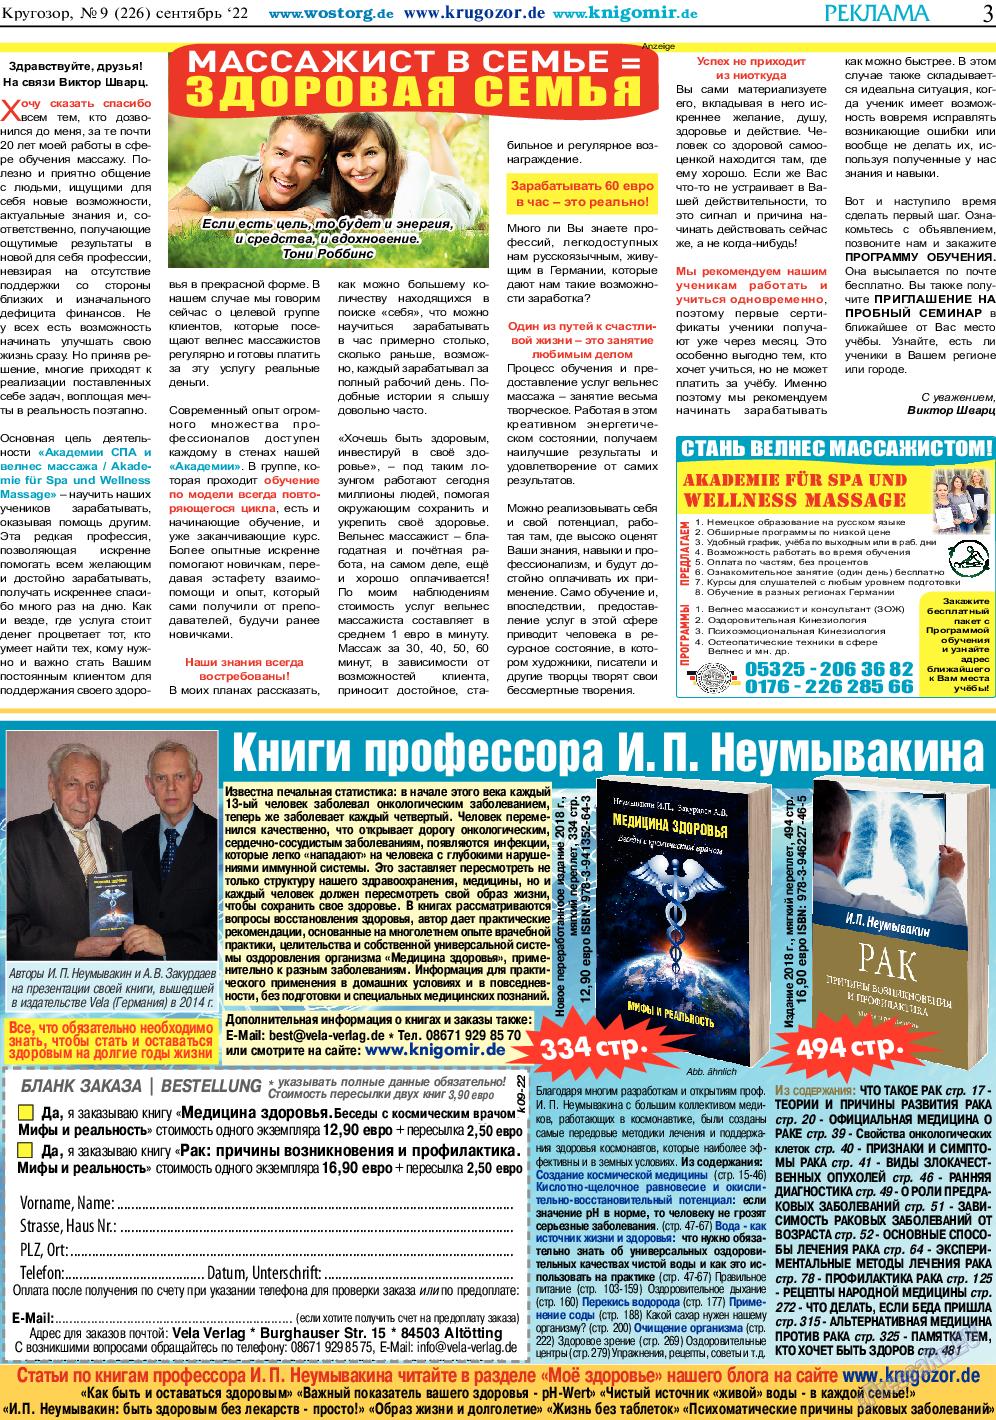 Кругозор, газета. 2022 №9 стр.3